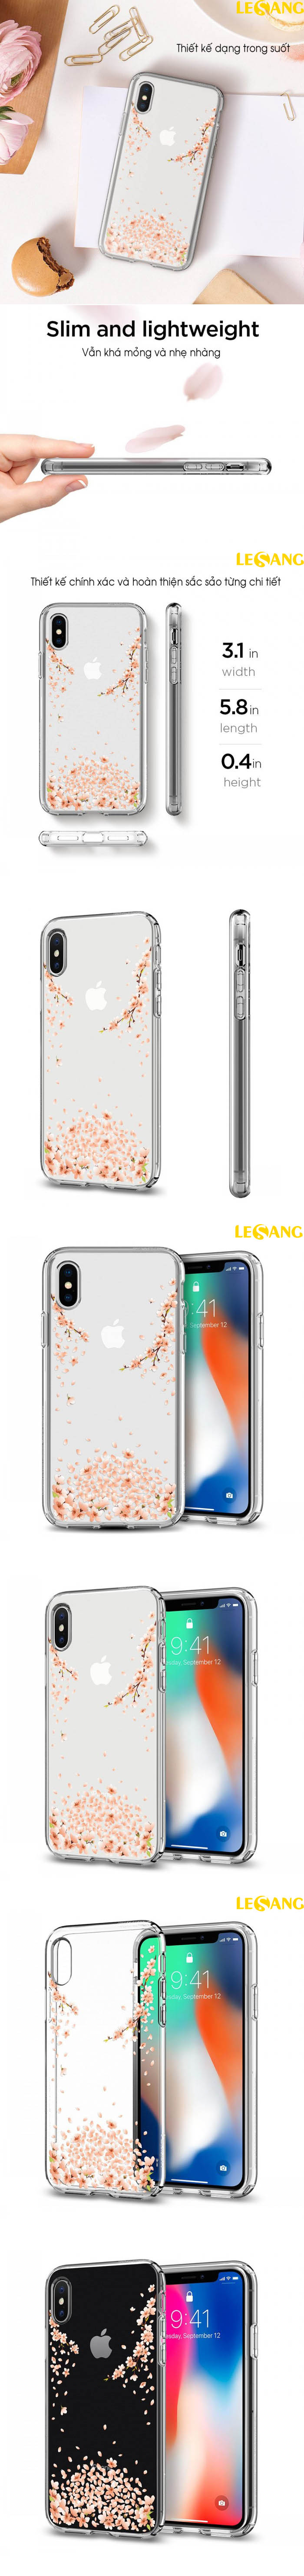 Ốp lưng iPhone X / iPhone 10 Spigen Liquid Crystal Blossom 5